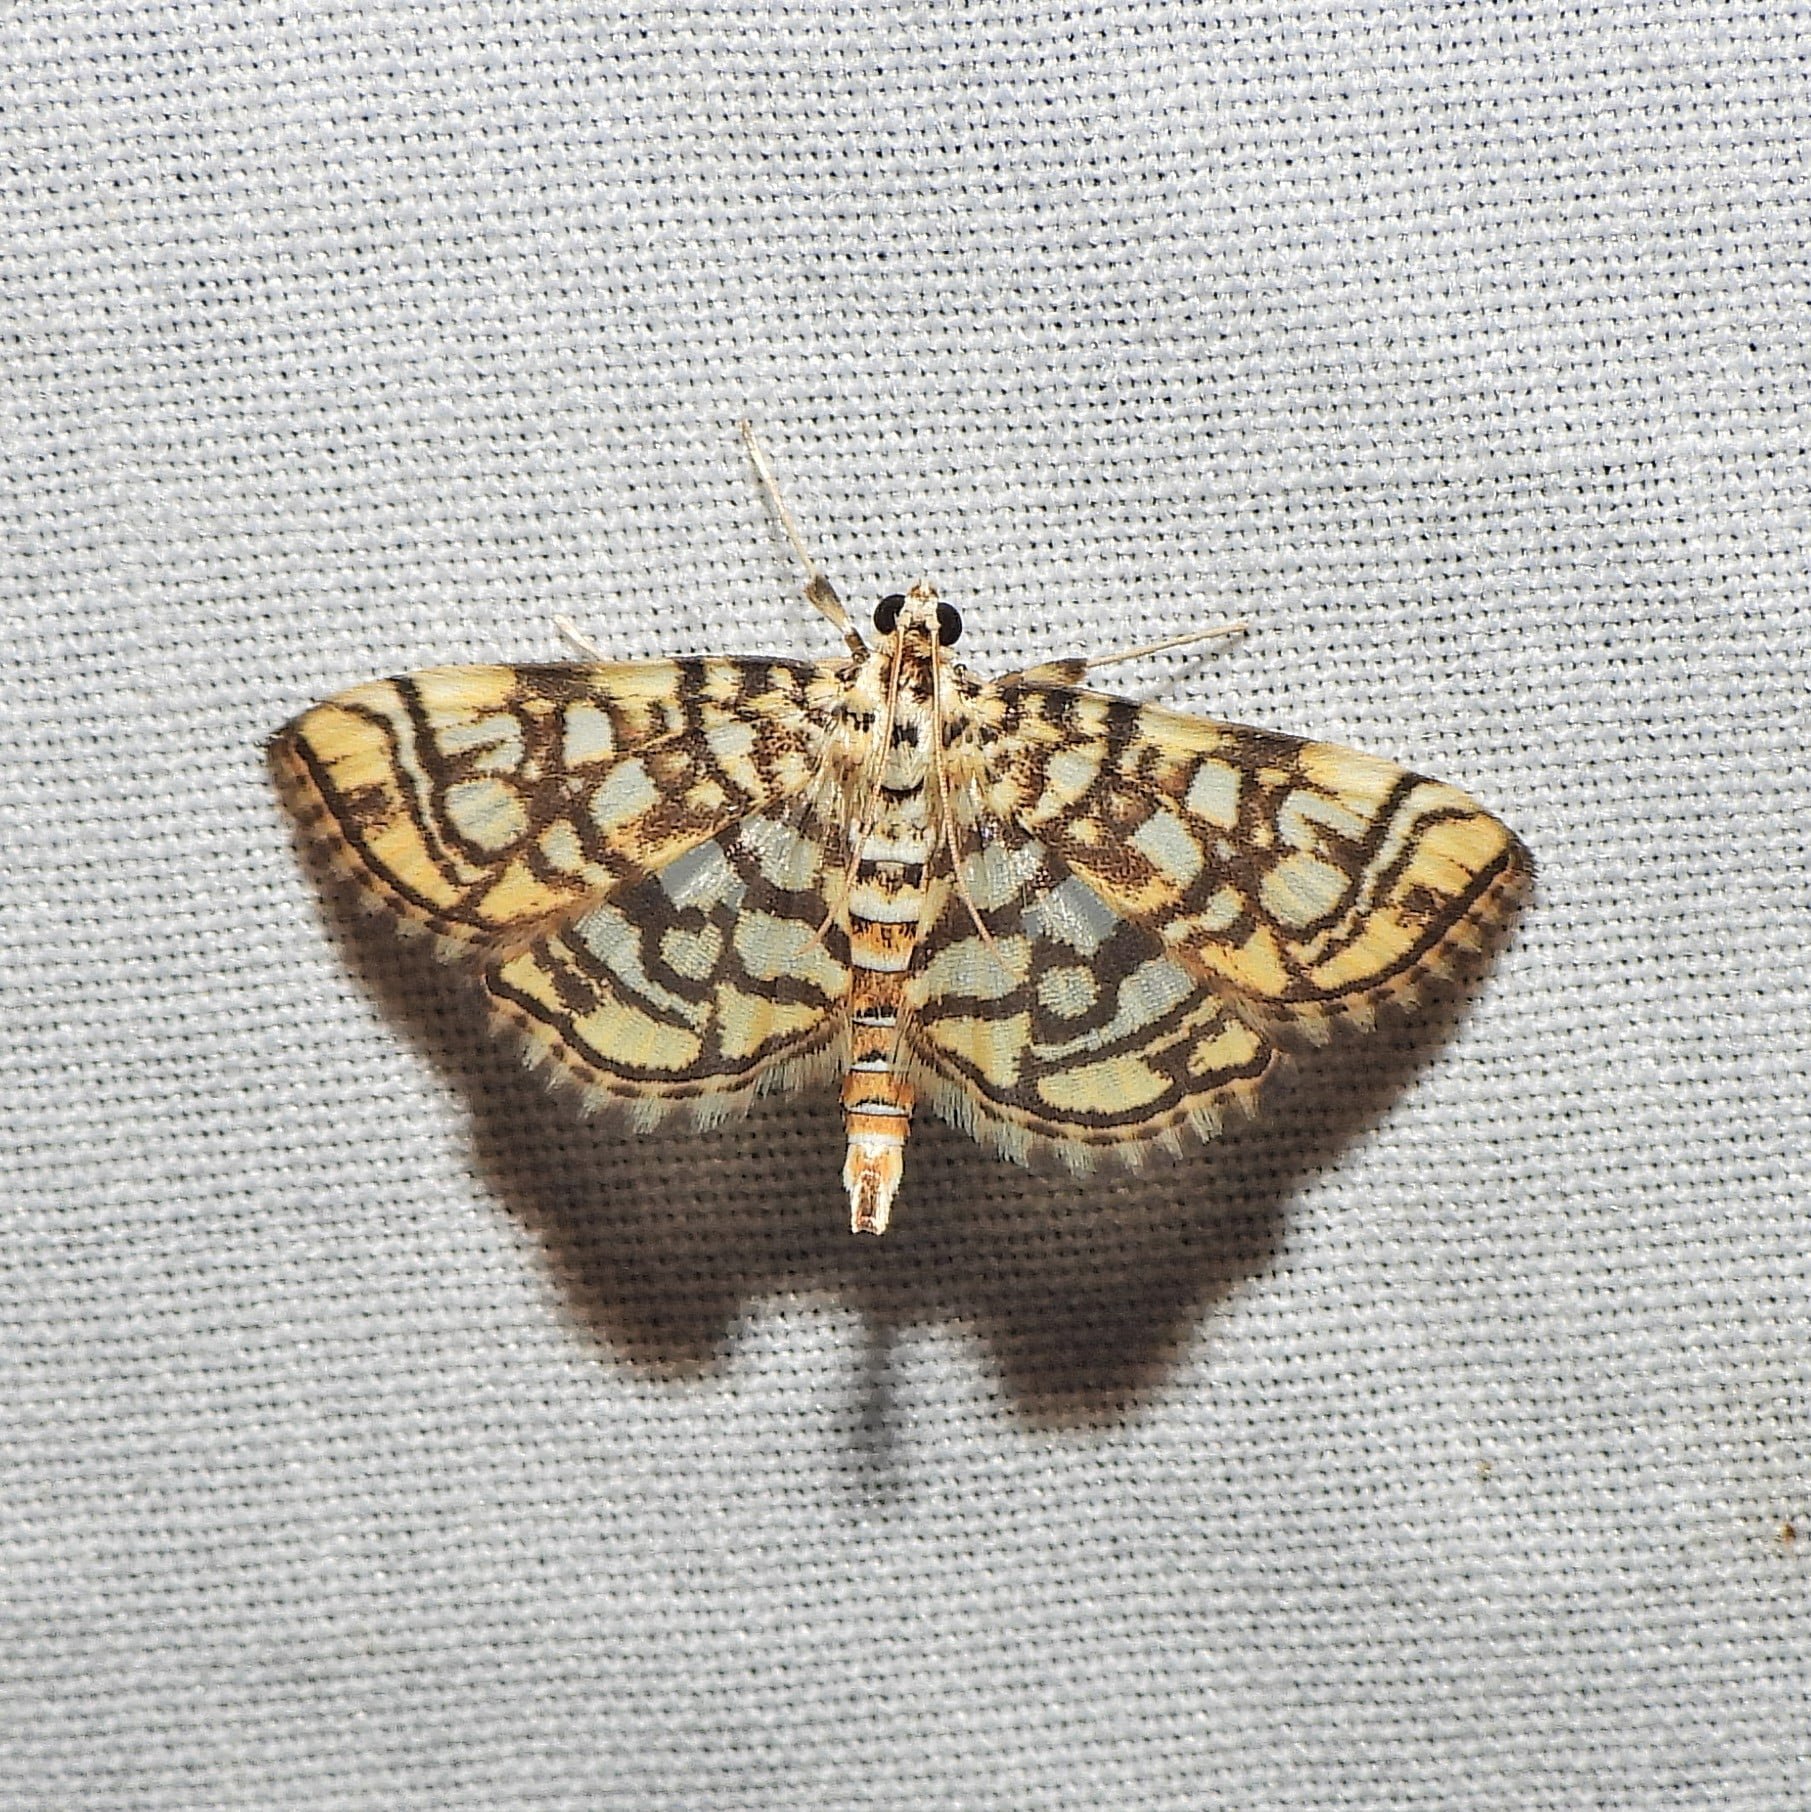 Bog Lygropia Moth.jpg